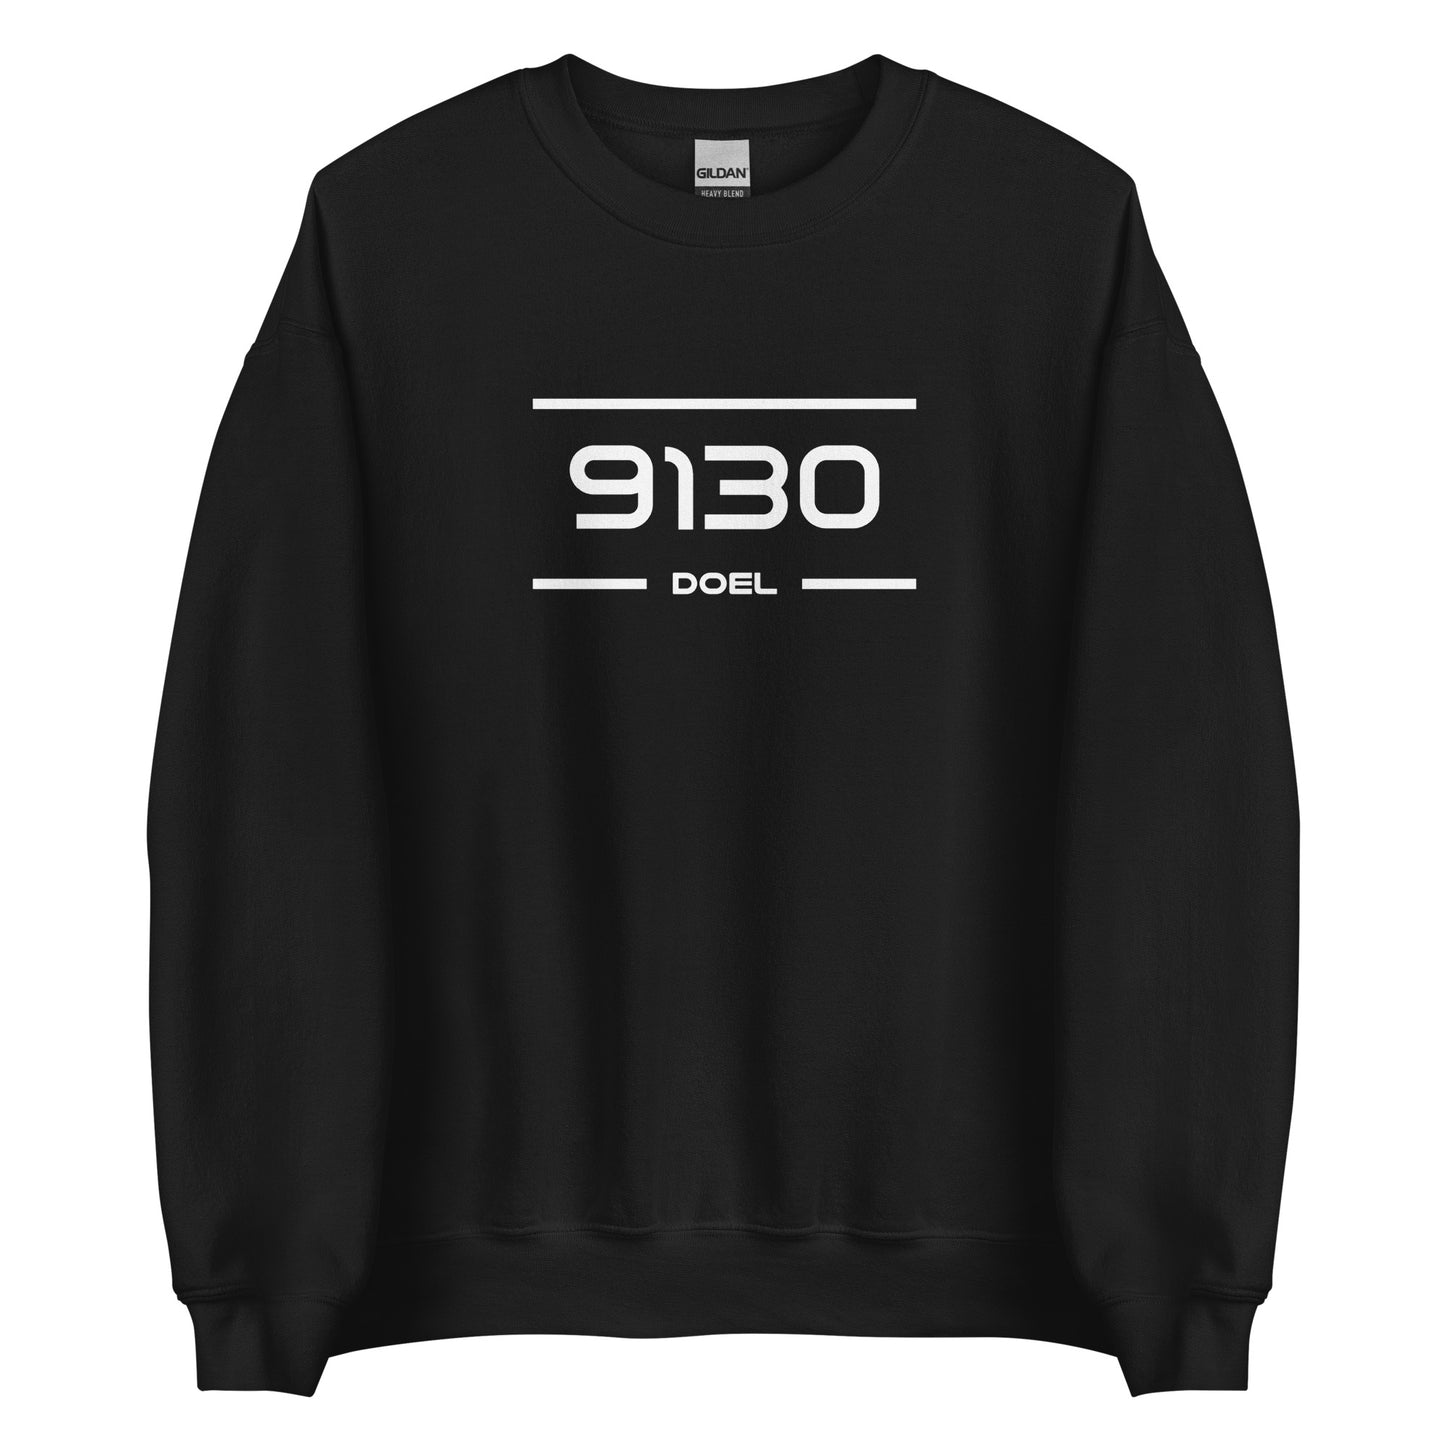 Sweater - 9130 - Doel (M/V)